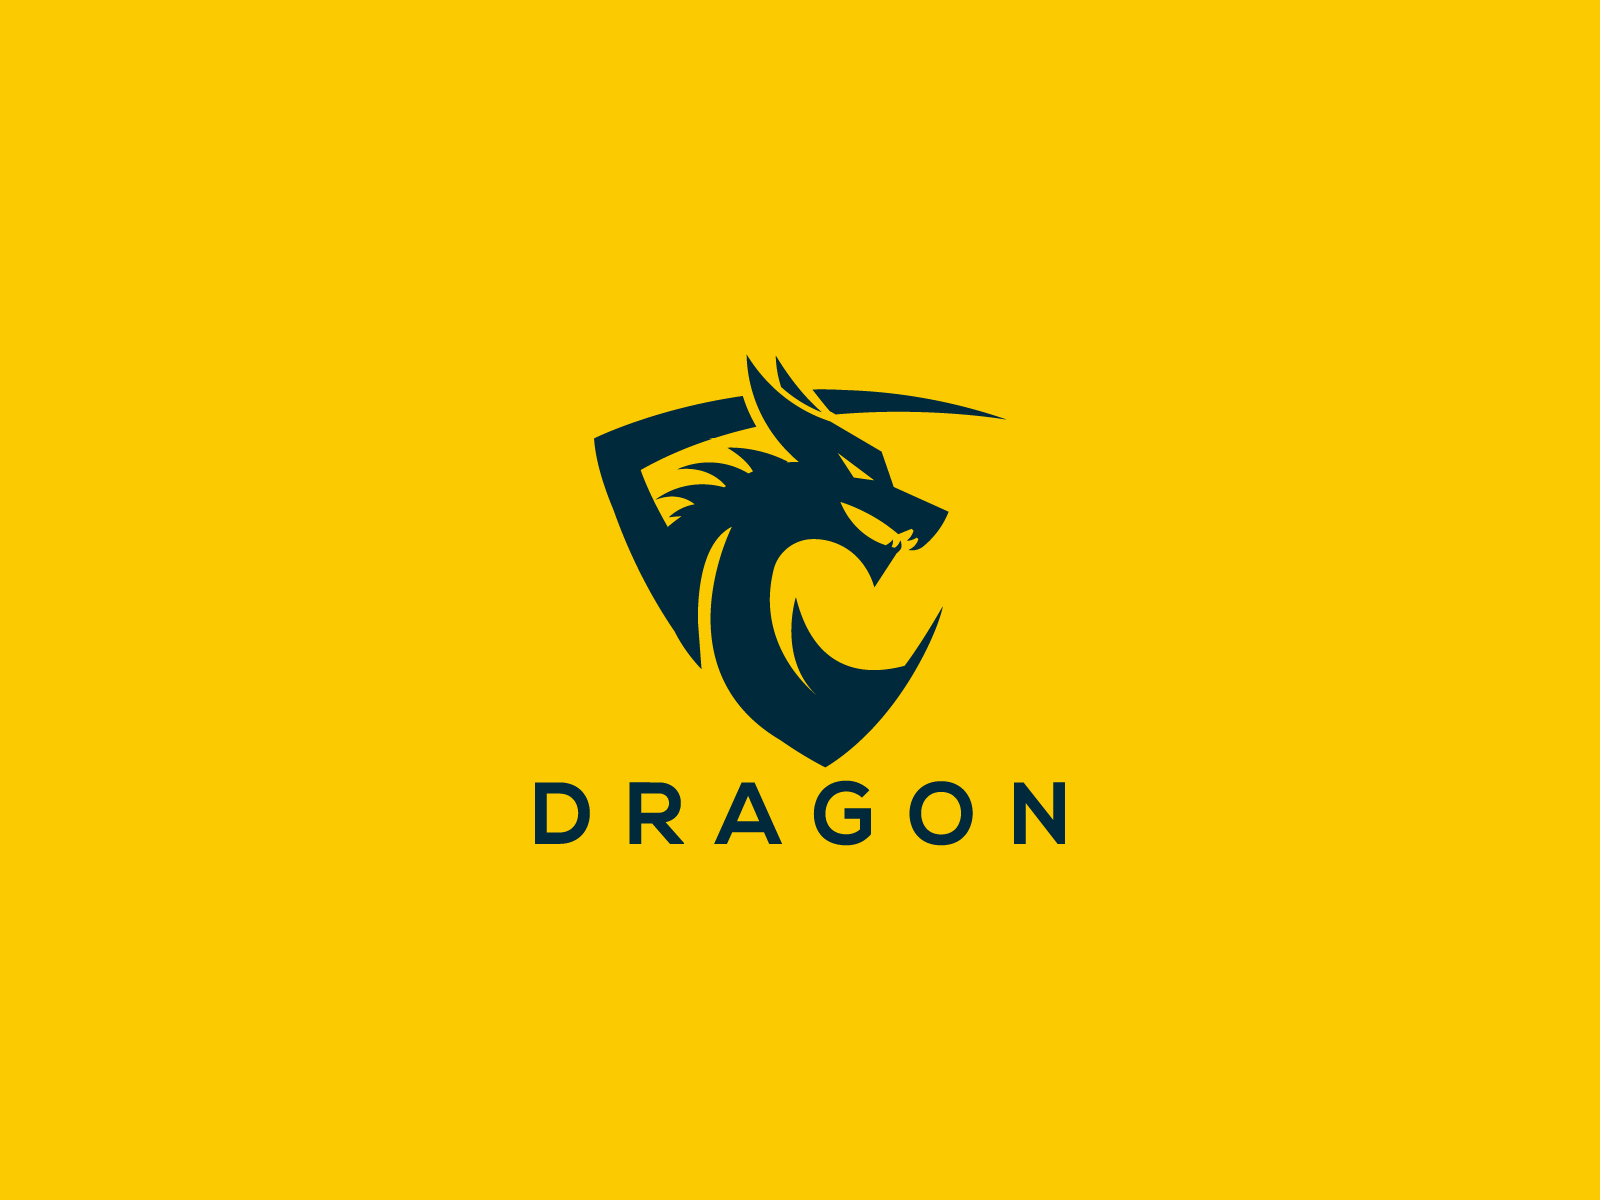 73+] Dragon Logo Wallpaper - WallpaperSafari